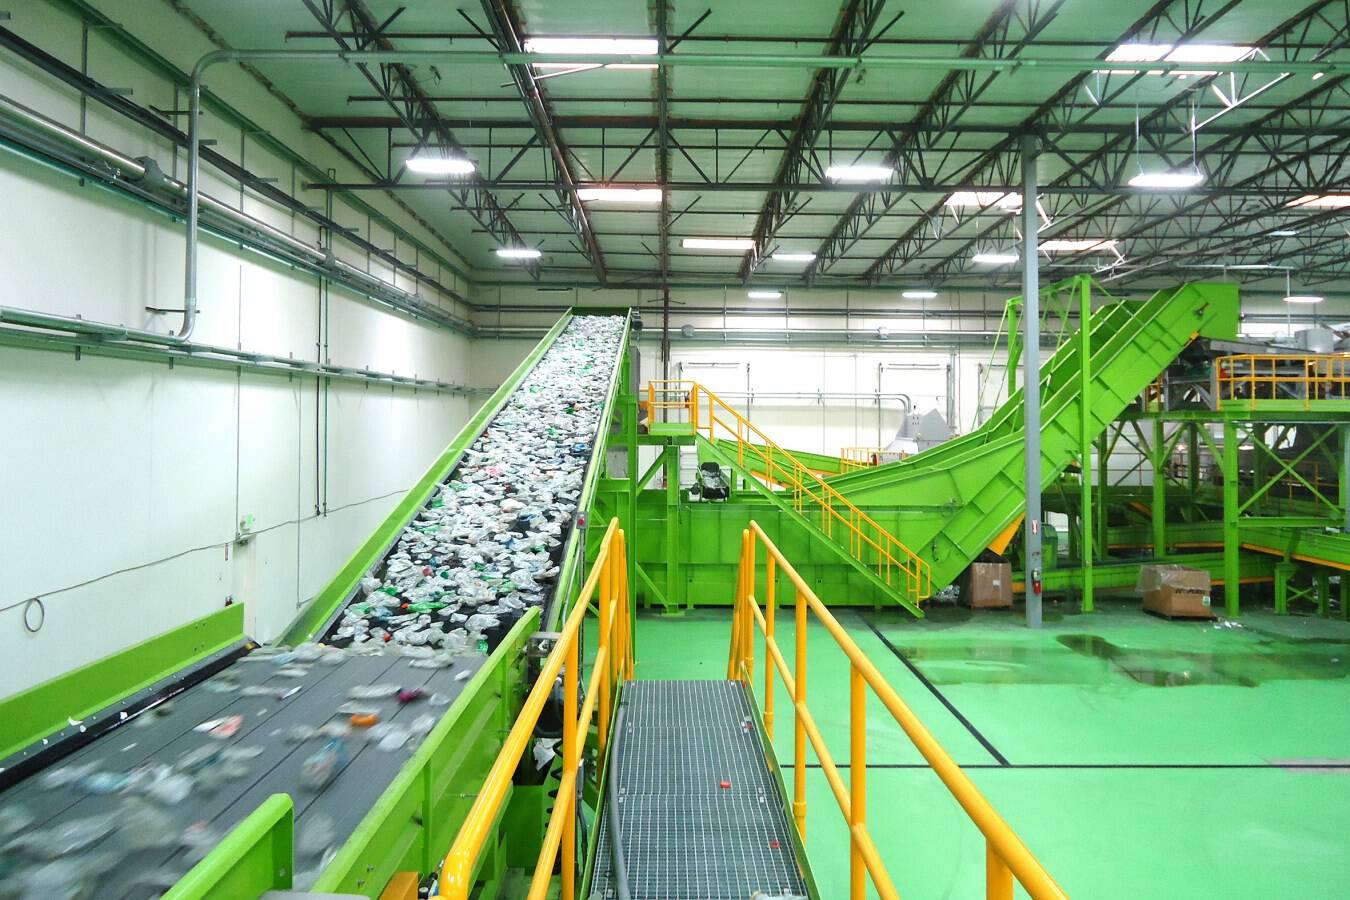 Bezner Kunststoffrecyclingmaschinen und -anlagen Innovative Recyclinglösungen führen zu hochwertigen Recyclingmaterialien. Die Recyclingprozesse von Bezner umfassen (Farb-)Sortierung, Reinigung, Zerkleinerung, Granulierung, Schmelzen und Formgebung. 